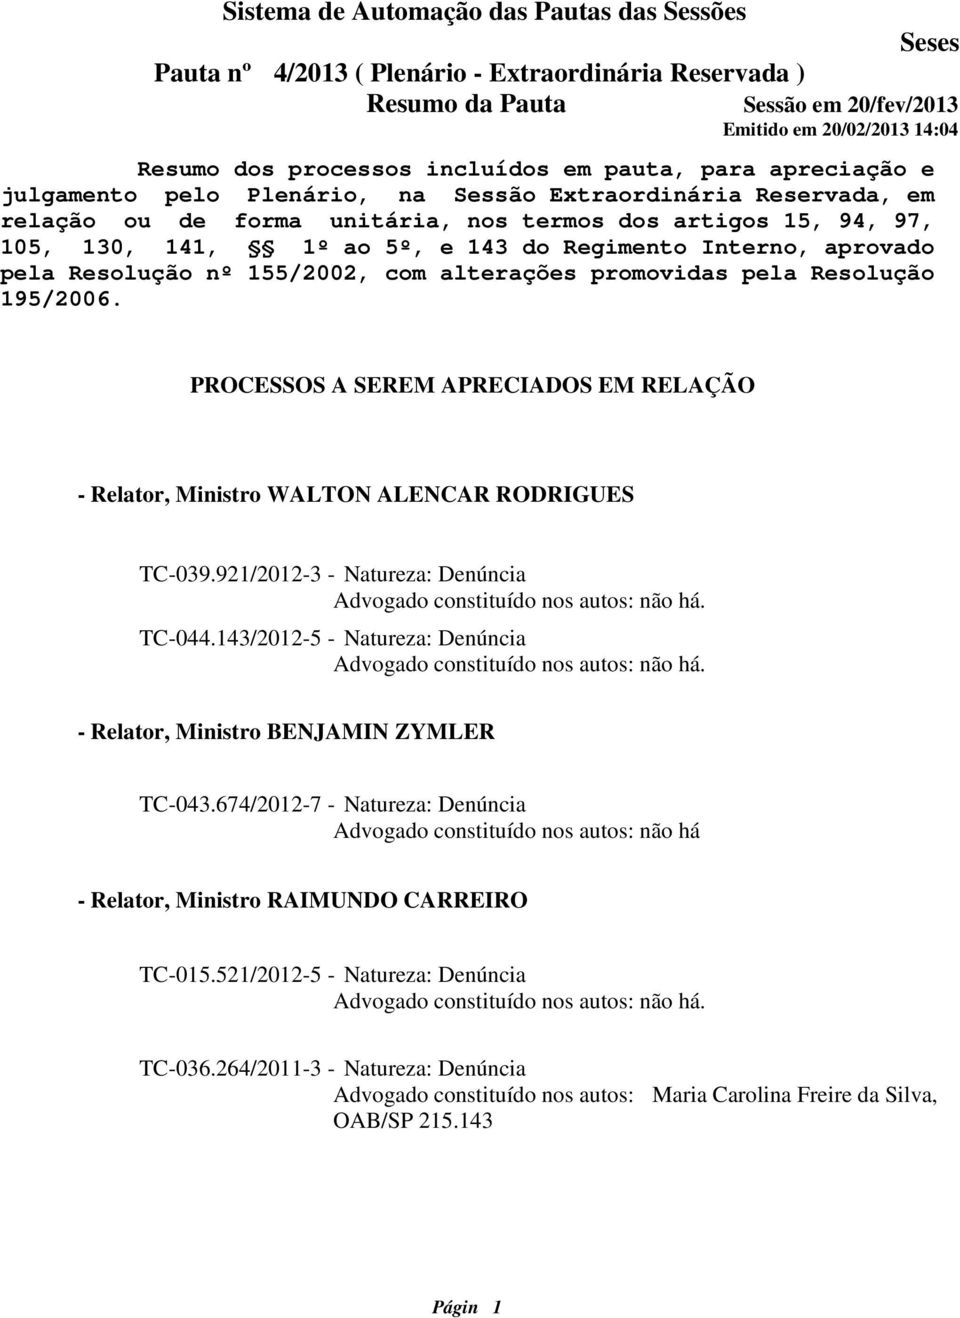 PROCESSOS A SEREM APRECIADOS EM RELAÇÃO - Relator, Ministro WALTON ALENCAR RODRIGUES TC-039.921/2012-3 - Natureza: Denúncia TC-044.